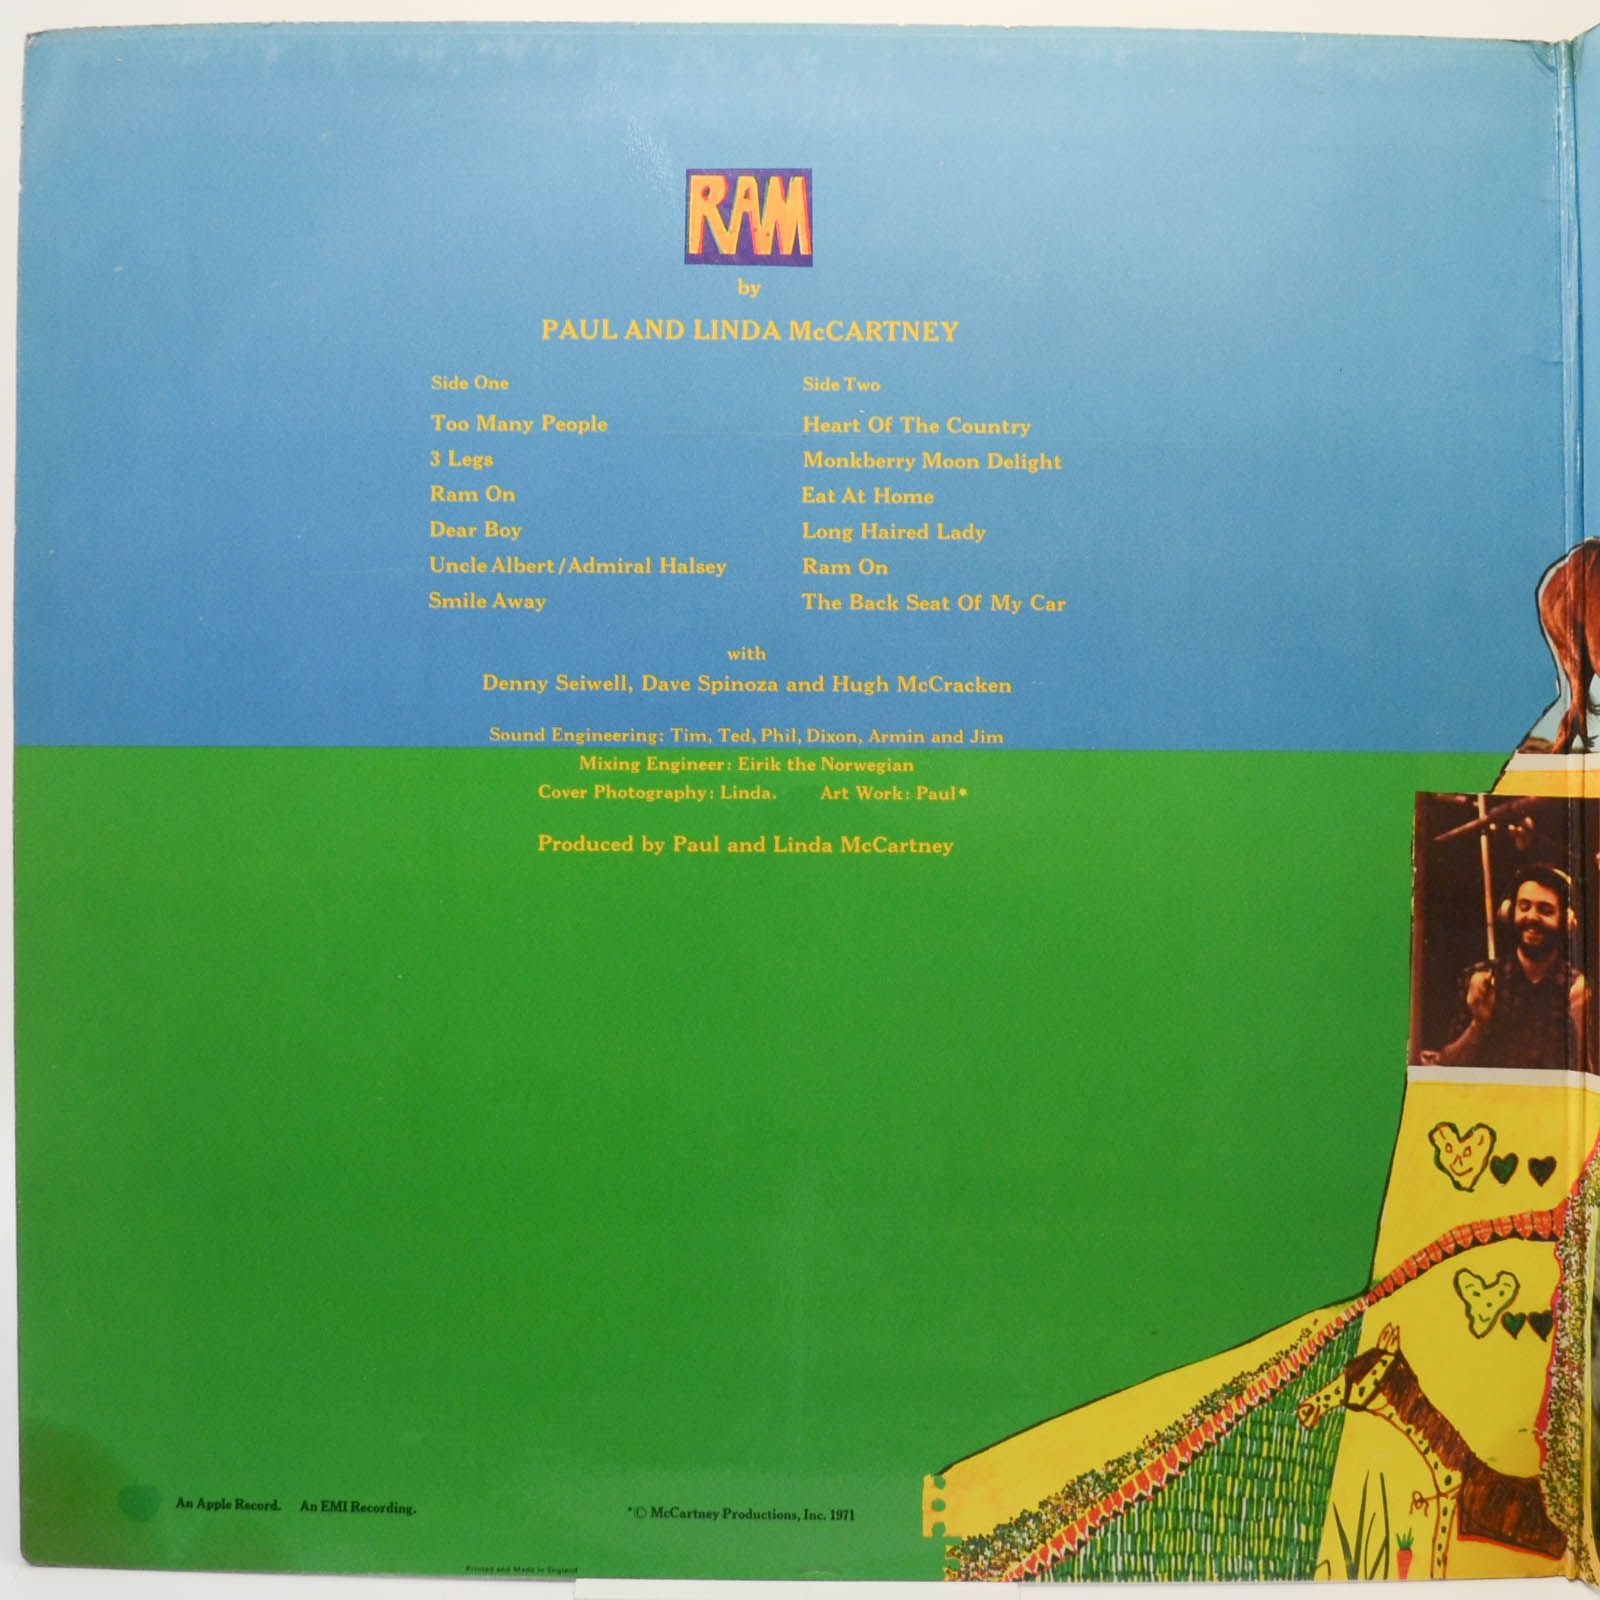 Paul And Linda McCartney — Ram, 1971